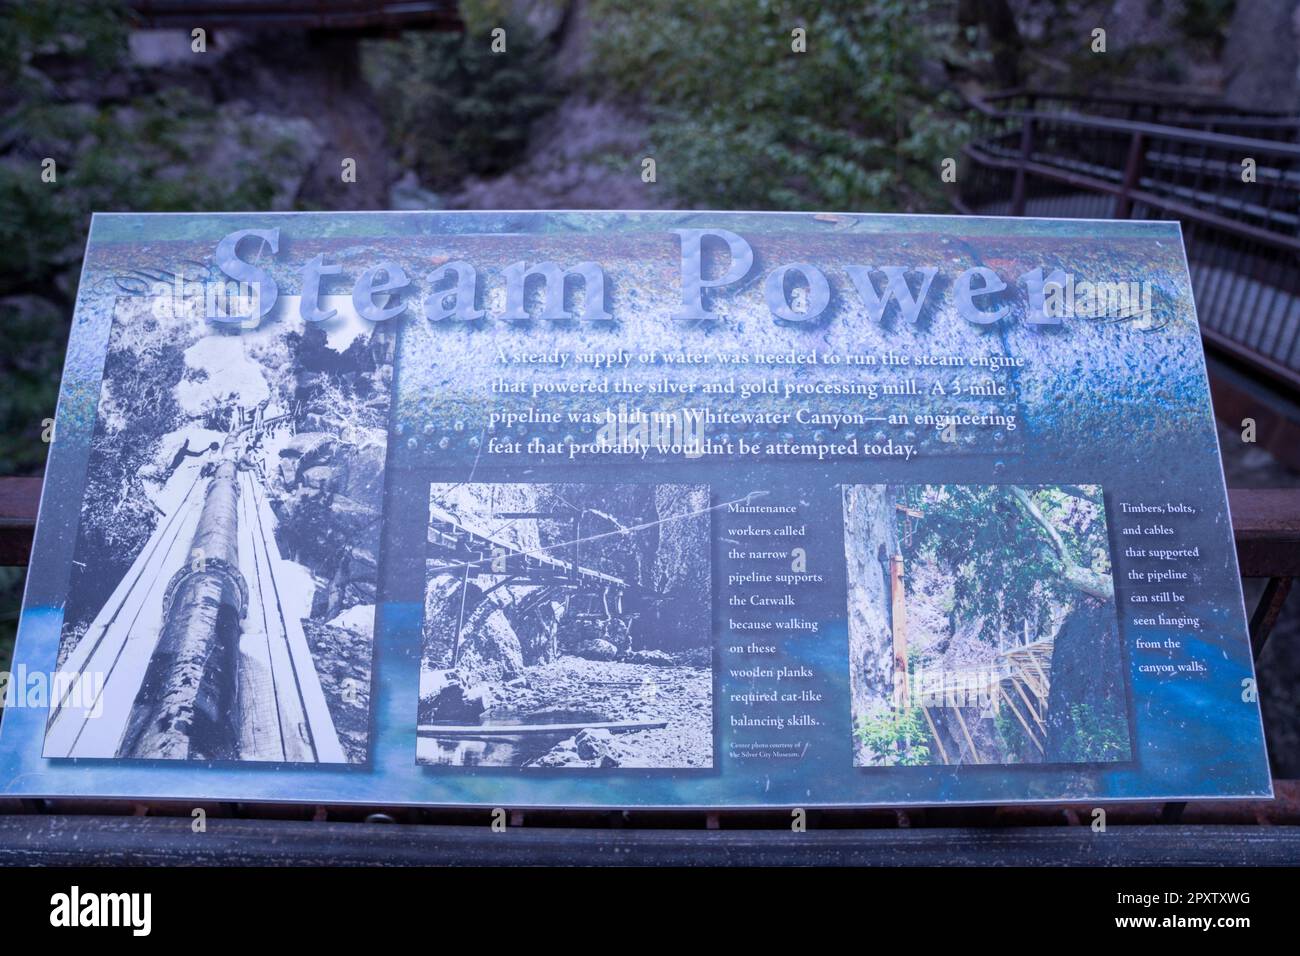 Glenwood, Nouveau-Mexique - 20 octobre 2022: Panneau d'information pour la zone de loisirs de passerelle de Whitewater Canyon sur la façon dont une machine à vapeur était autrefois opérette Banque D'Images